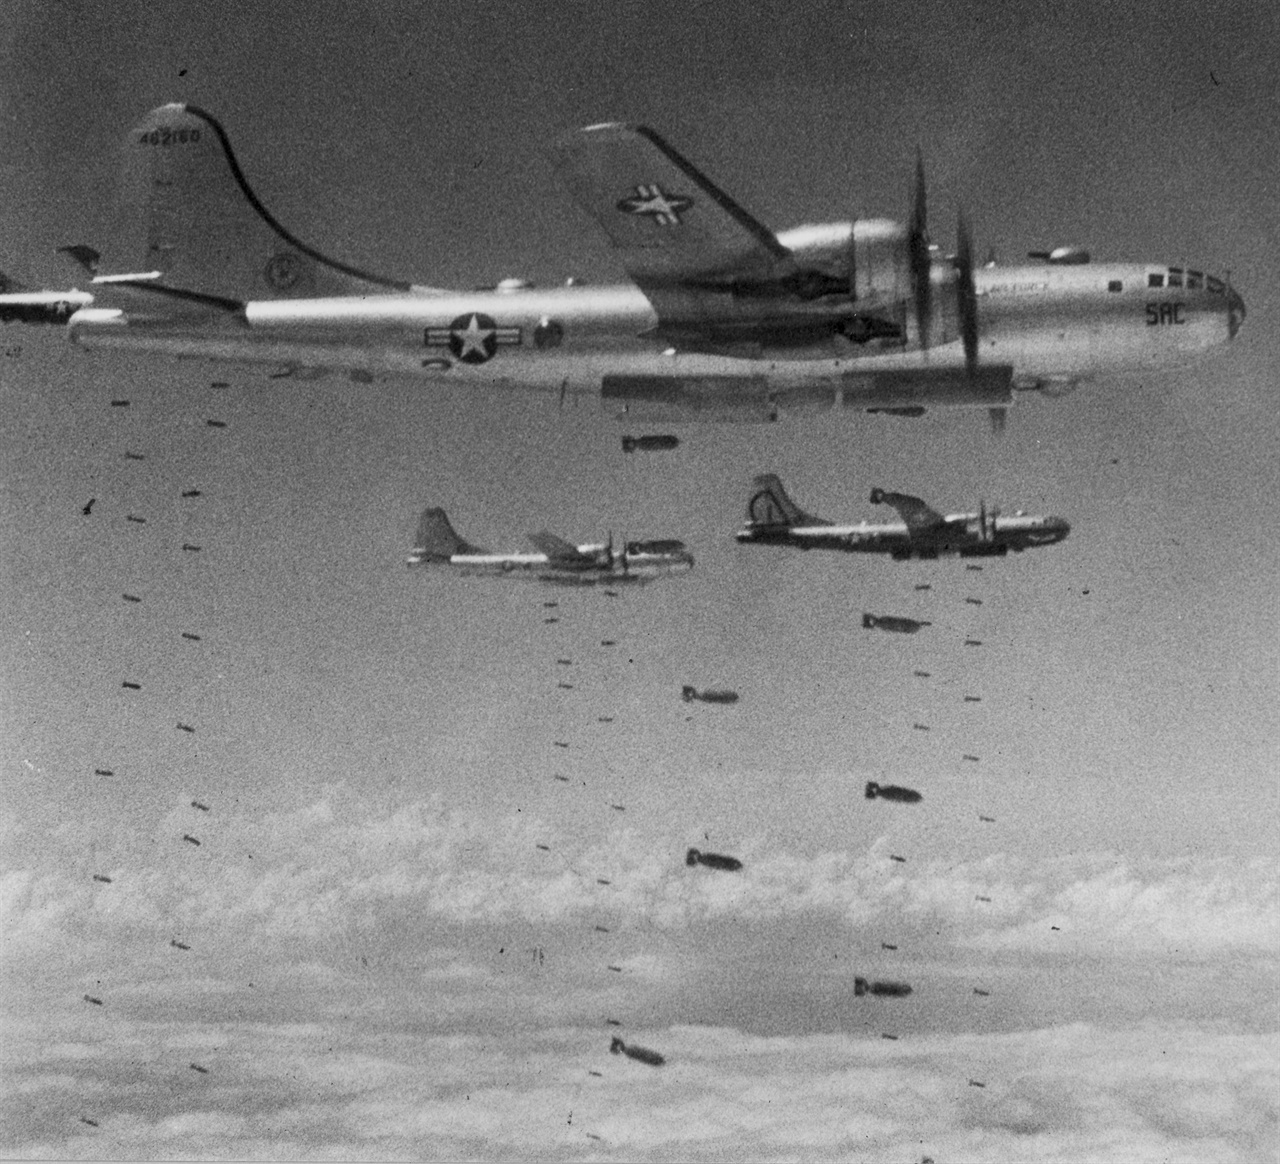  1950. 8. B-29 전투기들이 낙동강 일대를 융탄 폭격하고 있다.  